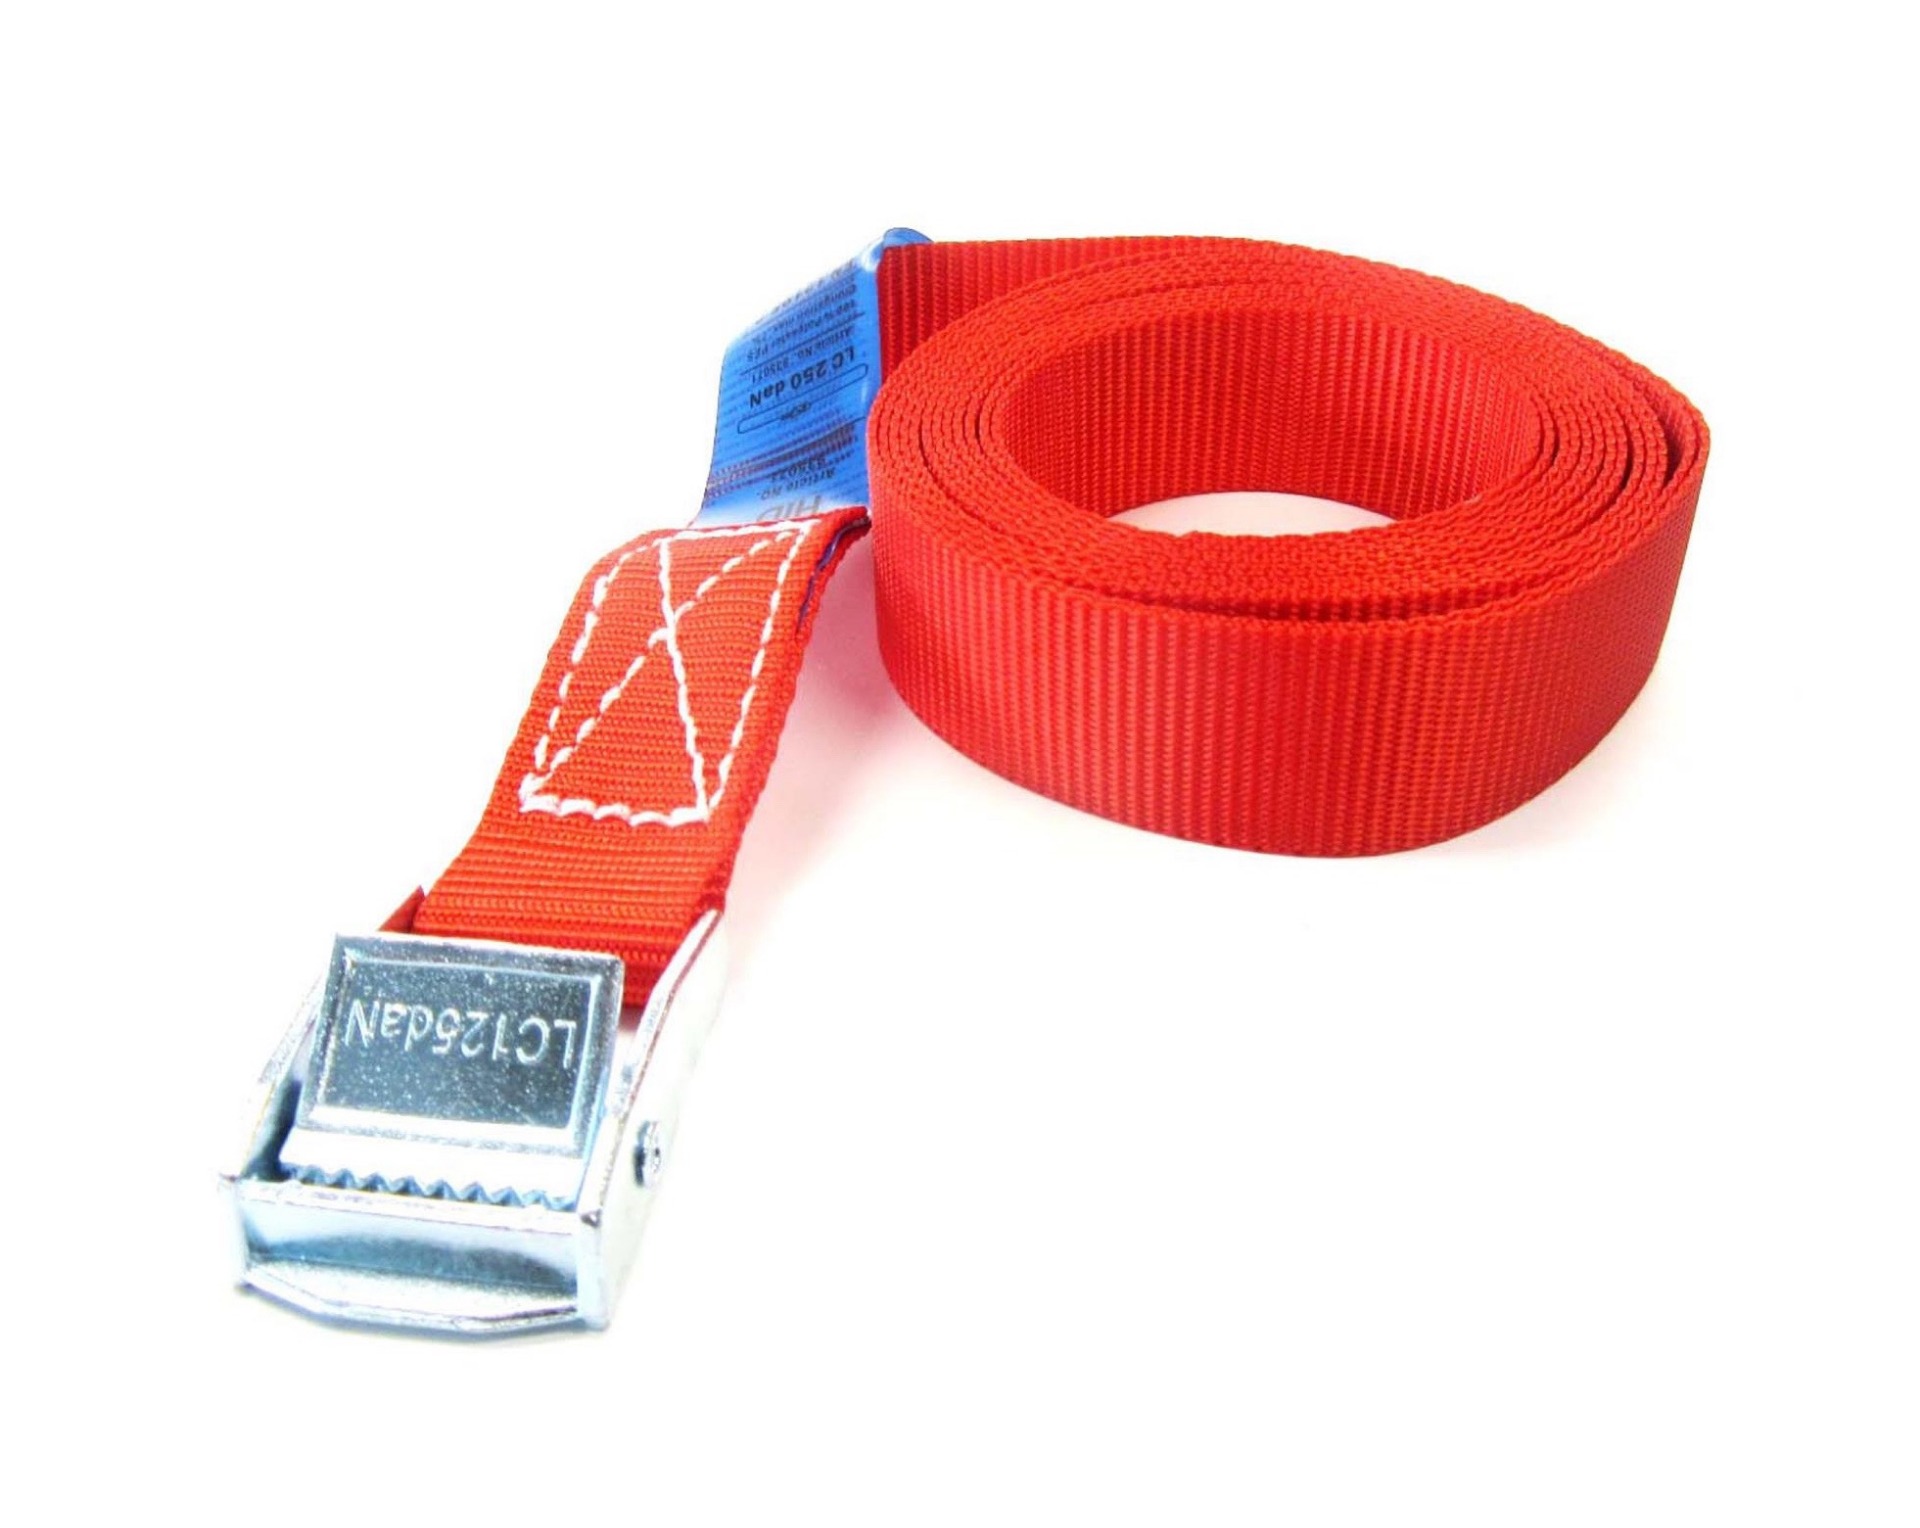 Spanband rood 25 mm meter met klemsluiting Spanband 25 mm met klemsluiting - Kopen? Spanband.net. De Spanband specialist.